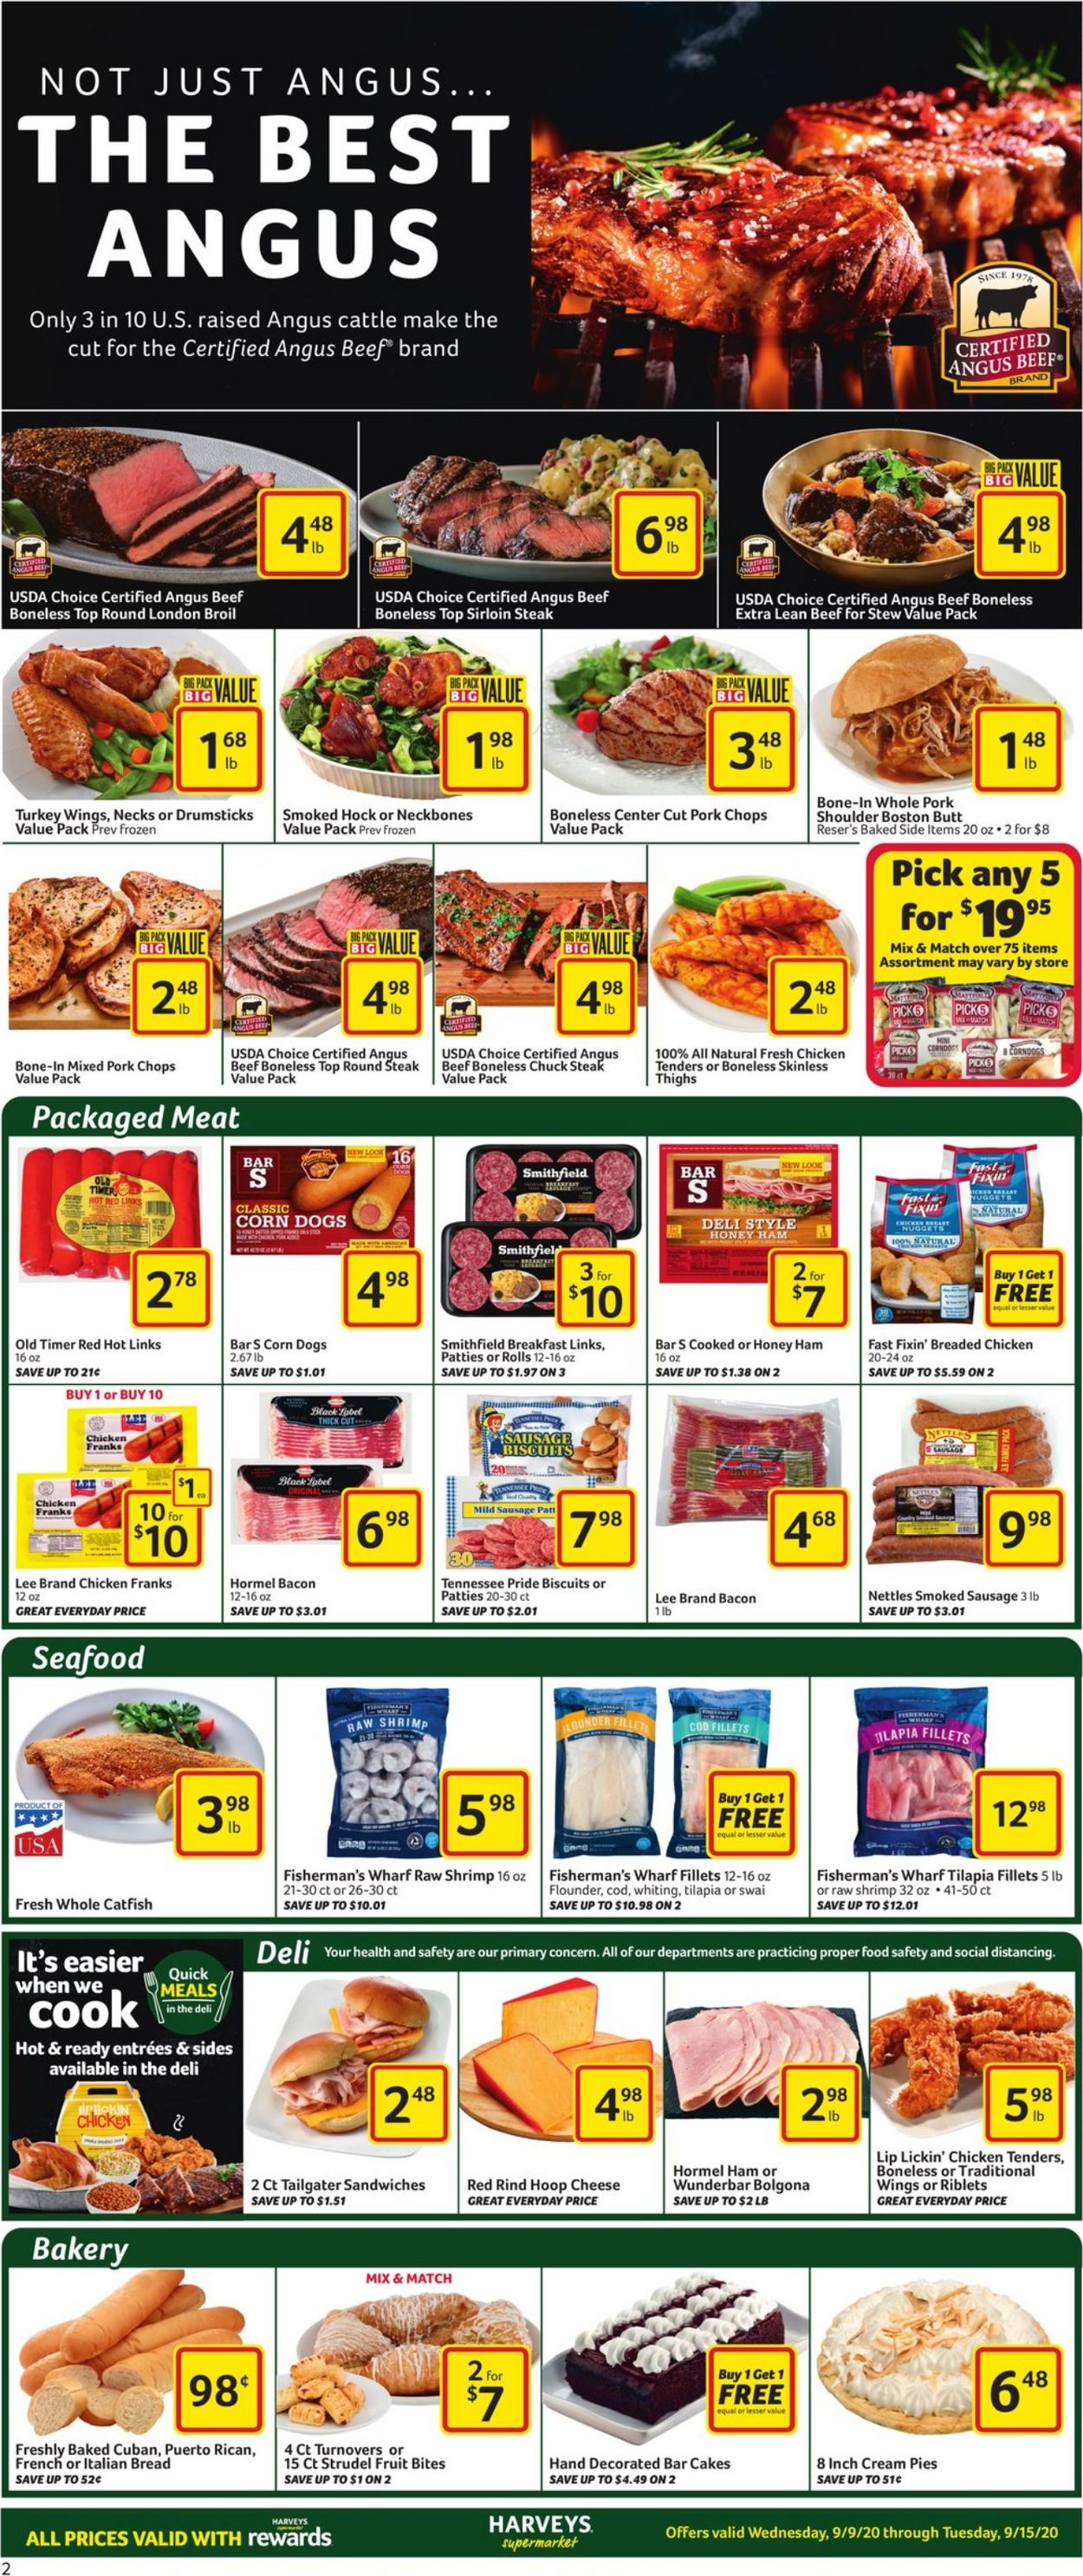 Catalogue Harveys Supermarket from 09/09/2020